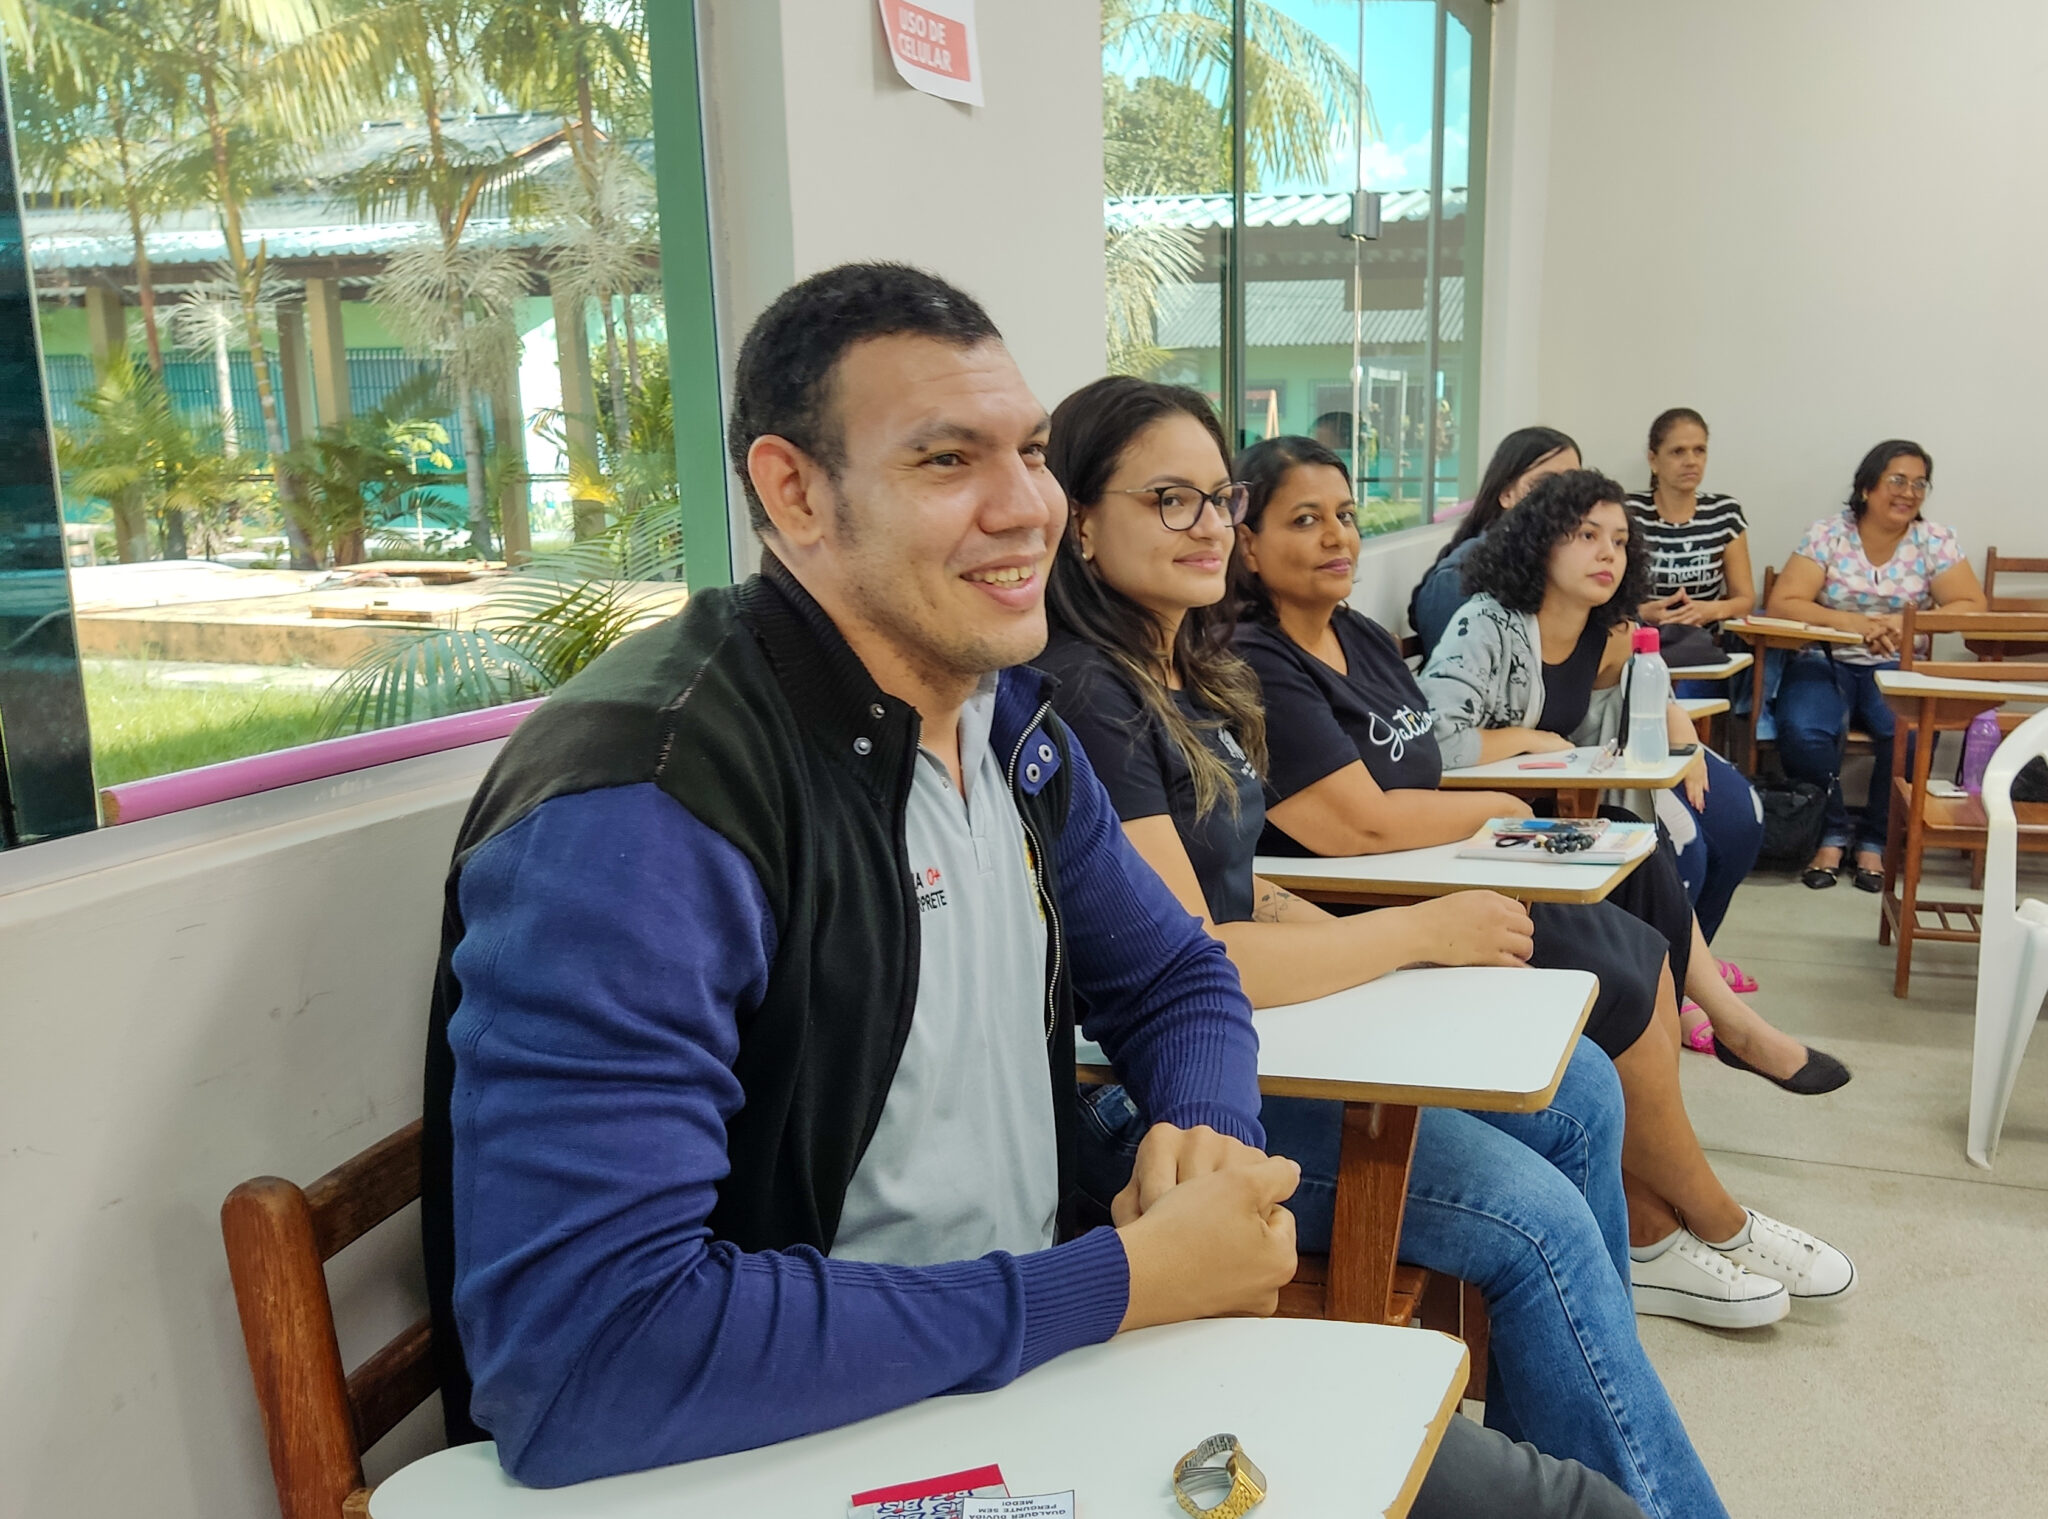 Centro de Apoio ao Surdo promove capacitação para professores tradutores de Rio Branco